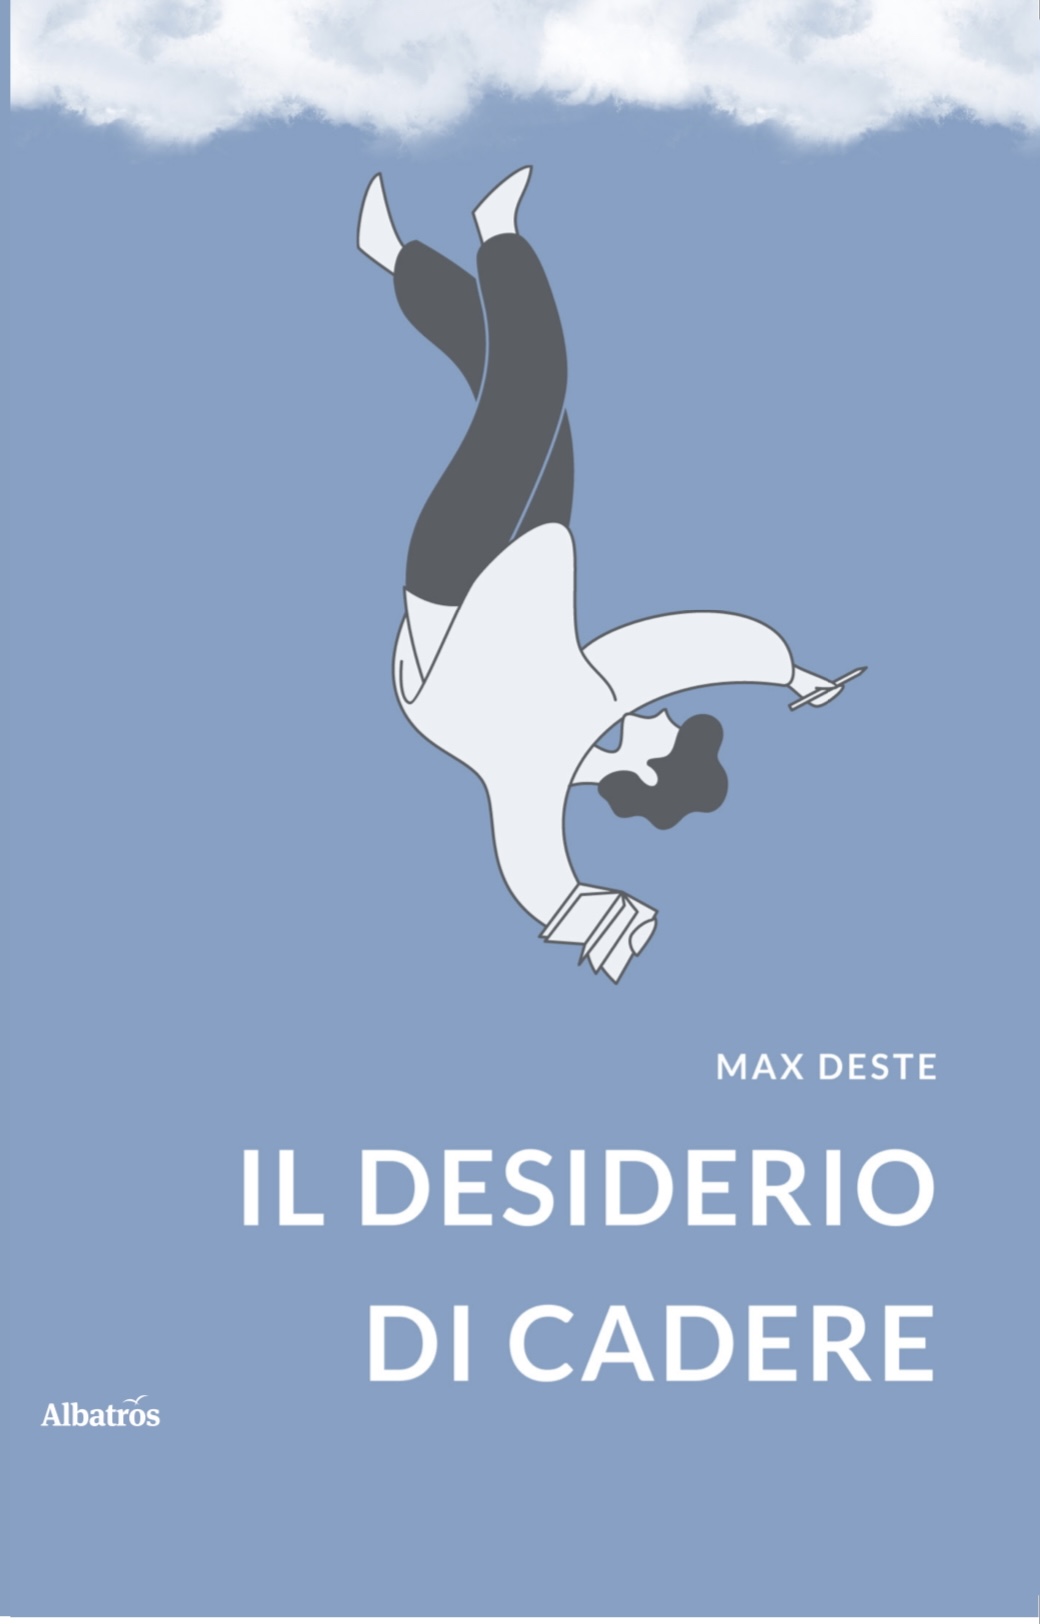 Il desiderio di cadere, il nuovo romanzo di Max Deste - Una lettura straniante, dolorosa, ma anche ironica